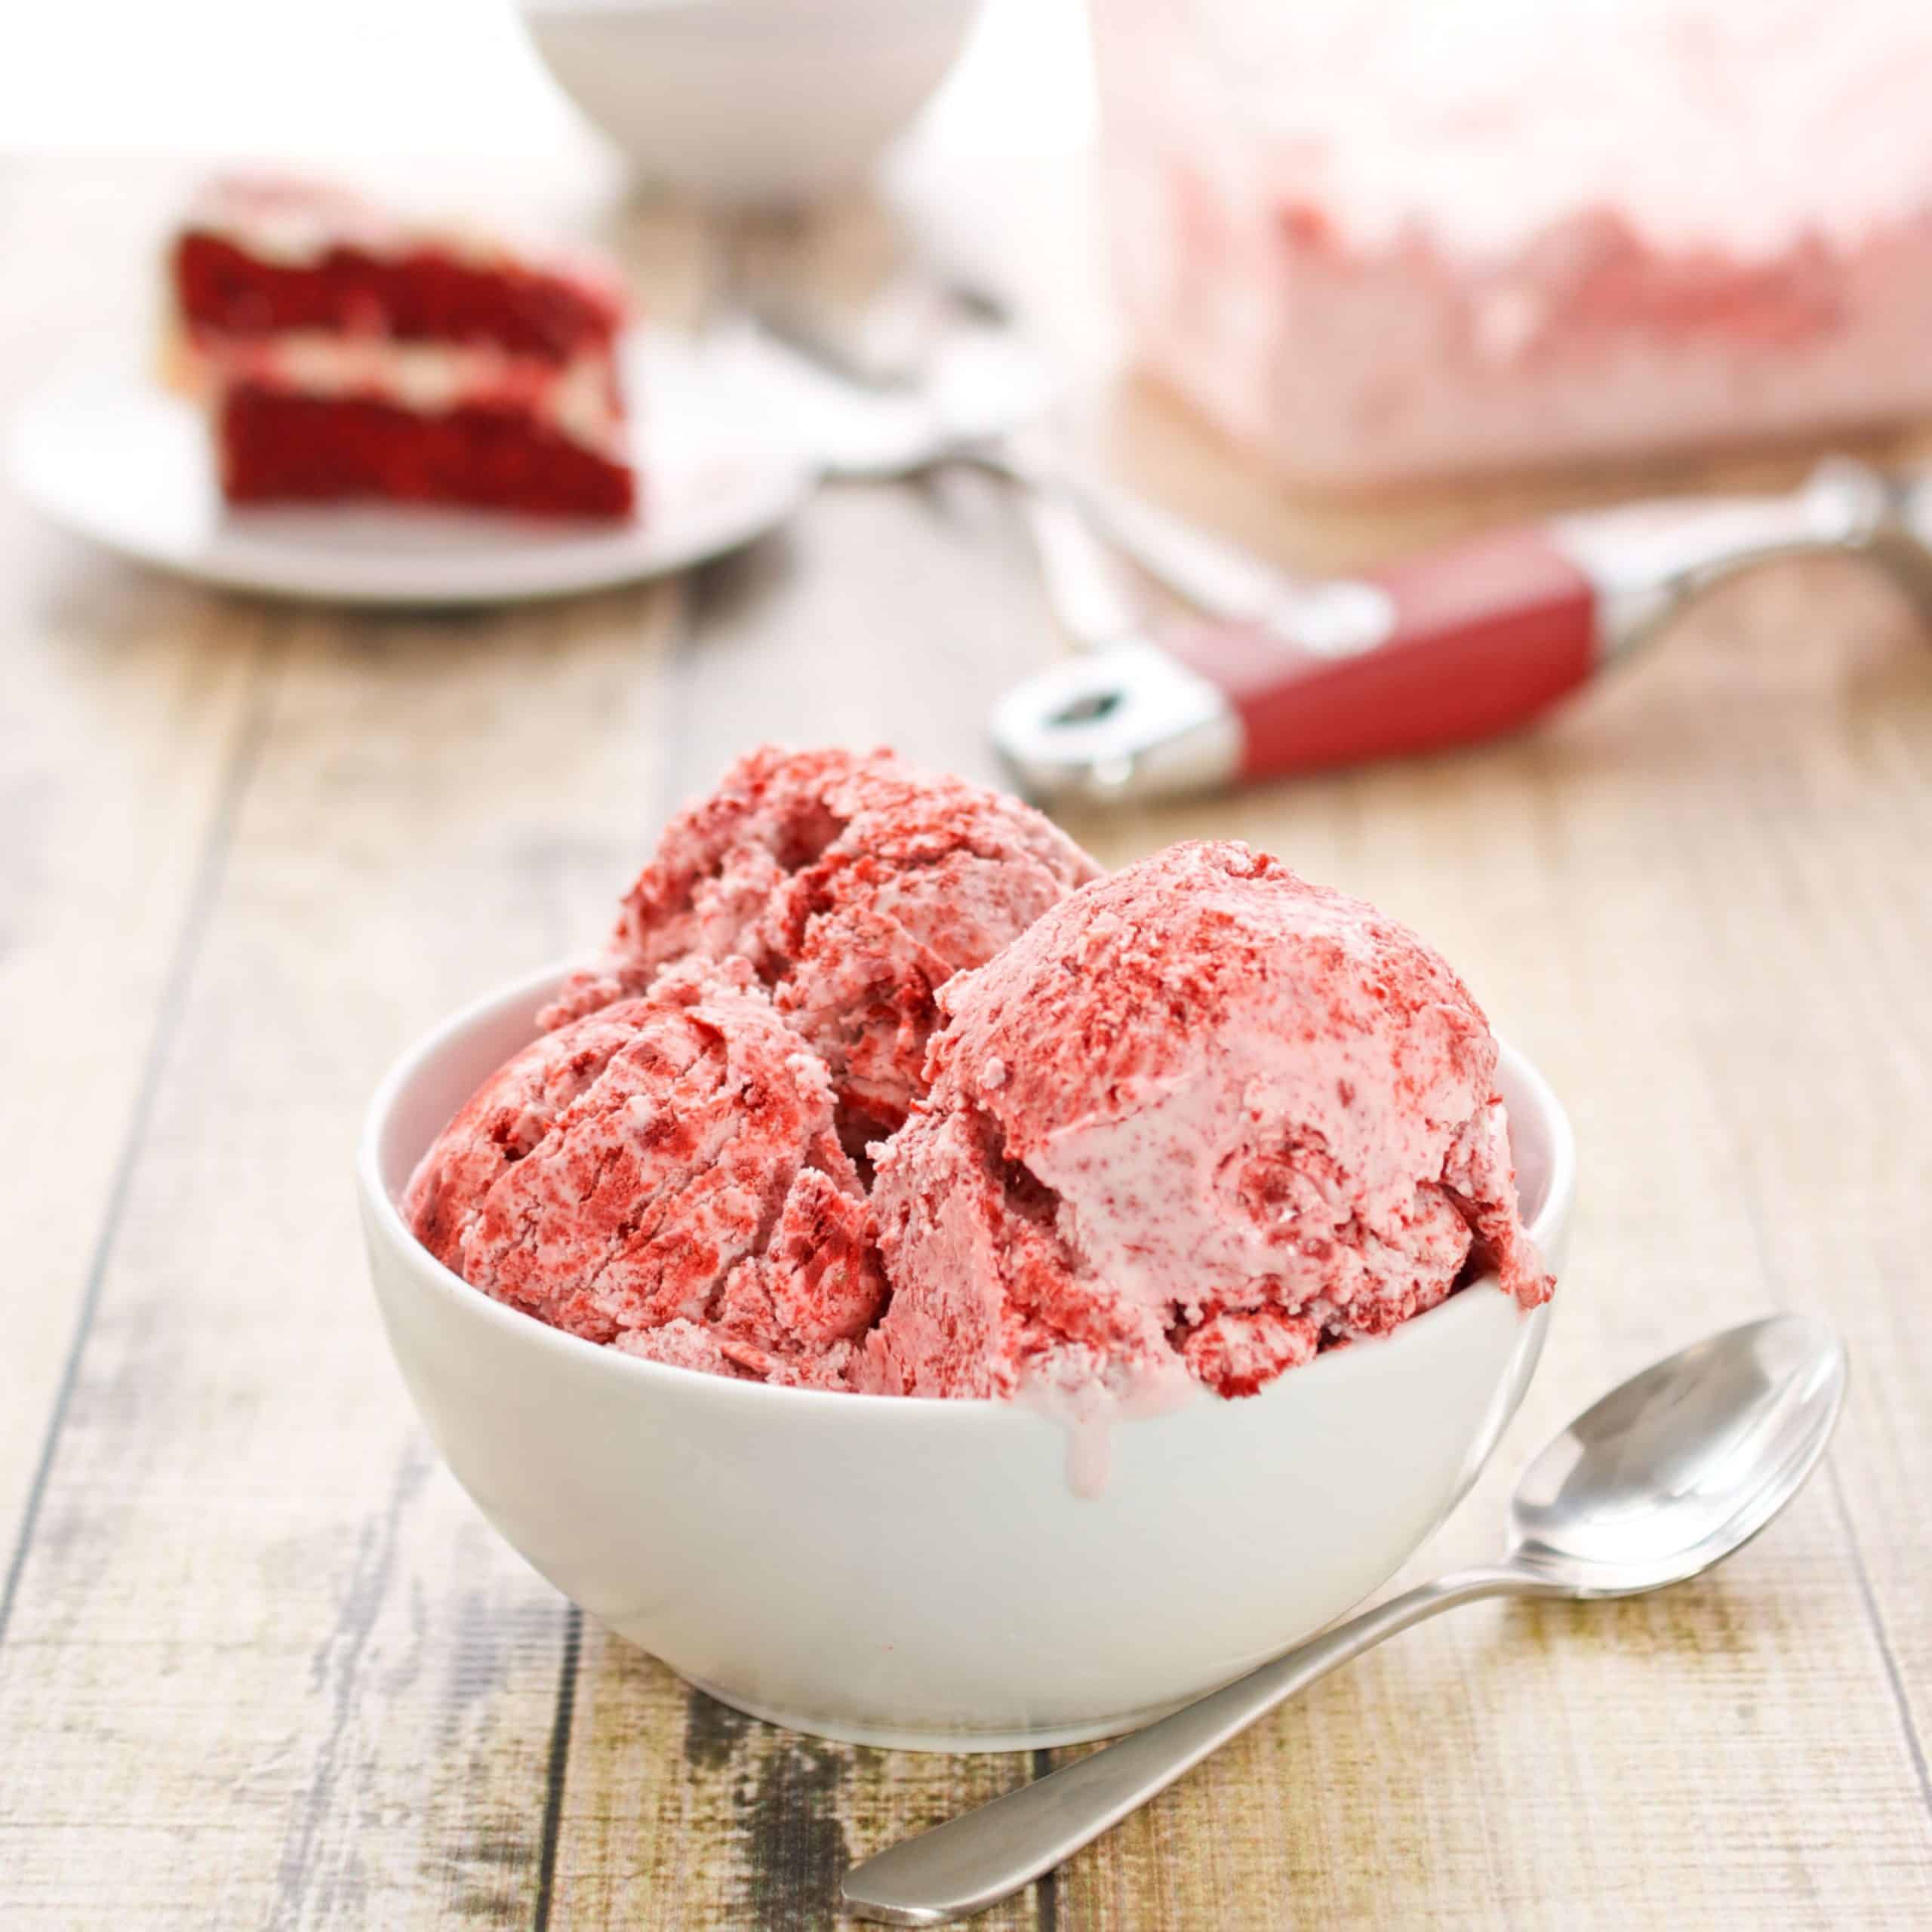 Homemade Red Velvet Ice Cream